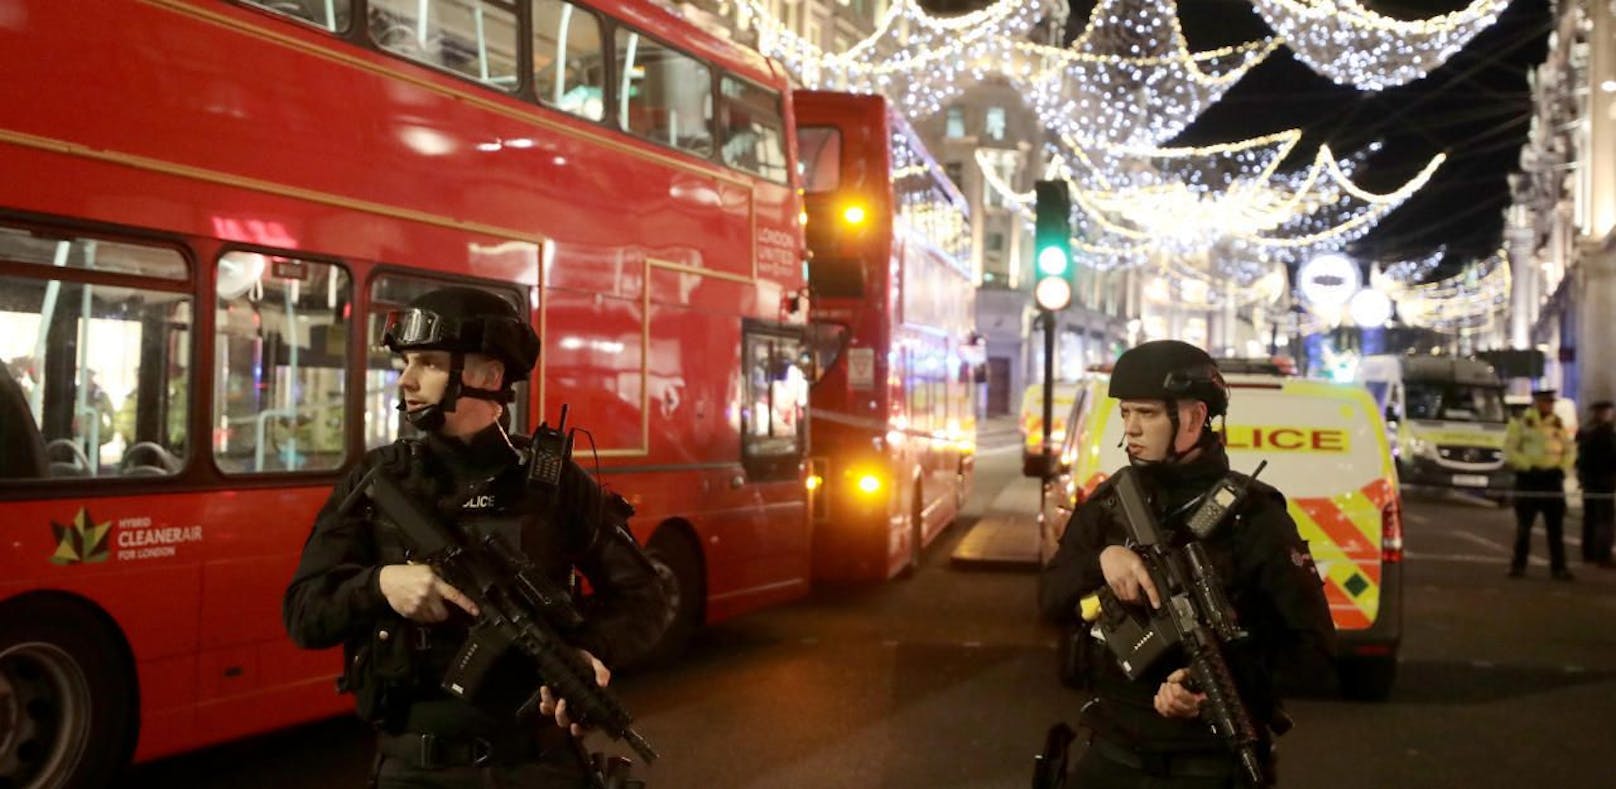 Die Londoner Polizei ermittelt in vier Mordfällen.